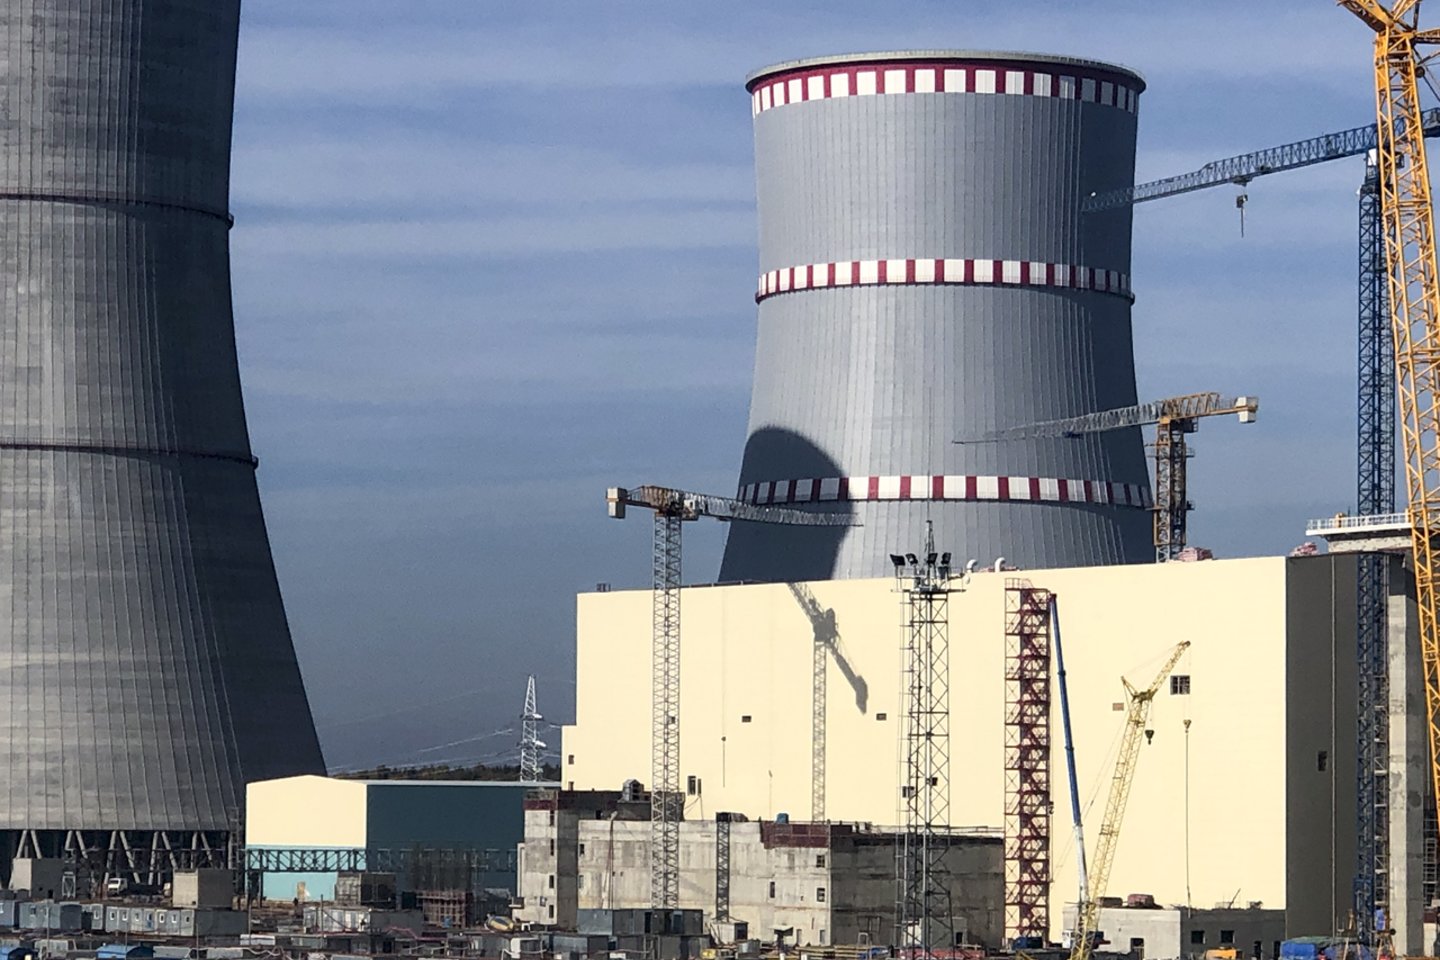 Branduolinis kuras pirmajam jėgainės reaktoriui iš Rusijos buvo atgabentas gegužės pradžioje.<br>V.Ščiavinsko nuotr.